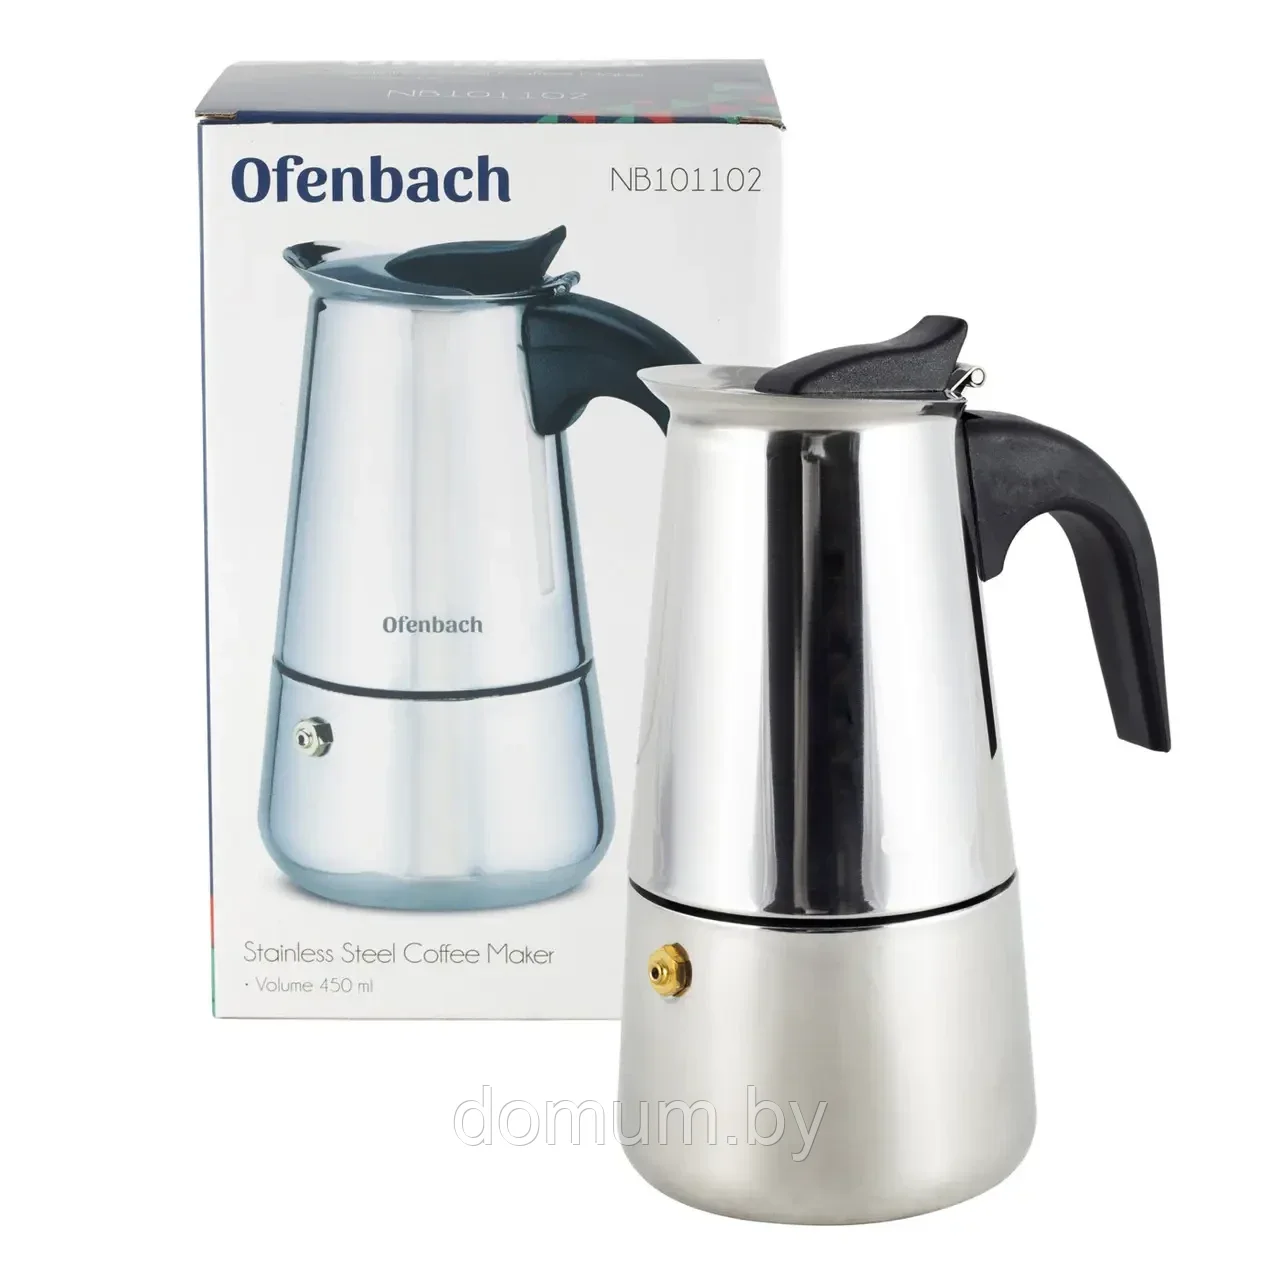 Гейзерная кофеварка Ofenbach 450мл (9 порций) из нержавеющей стали KM-101102